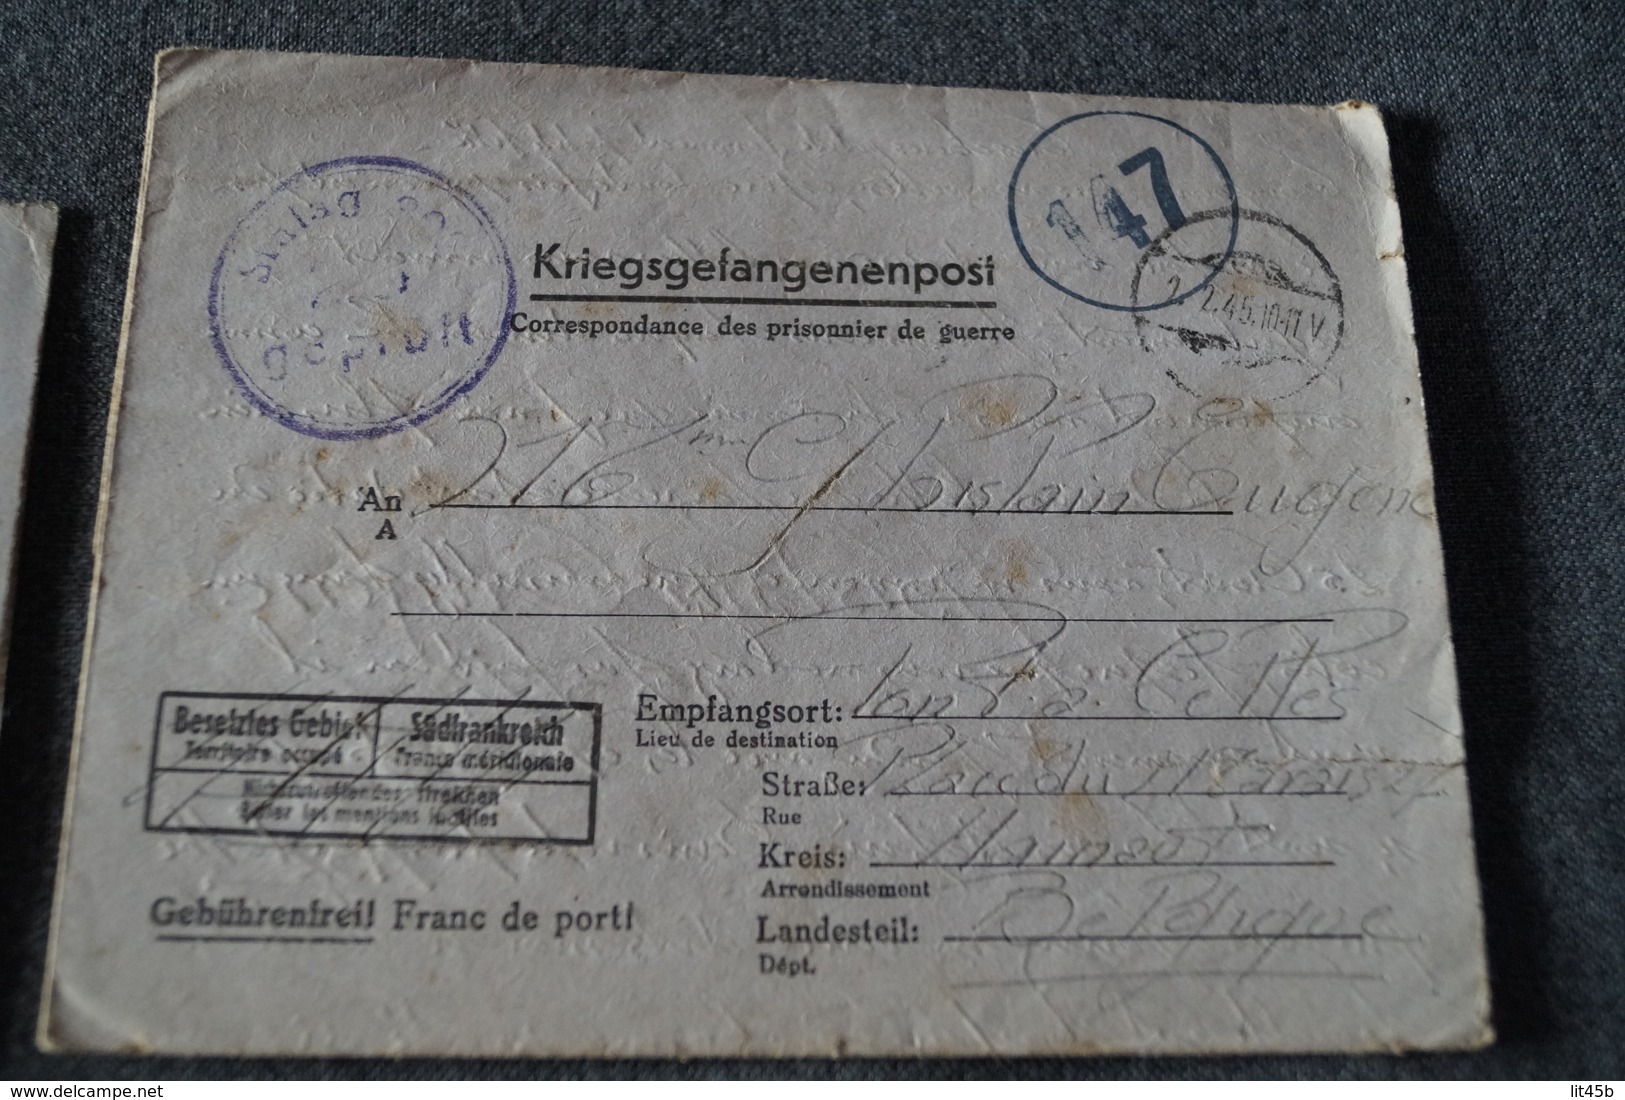 superbe lot de 6 courriers originaux du camp STALAG,prisonniers en Allemagne